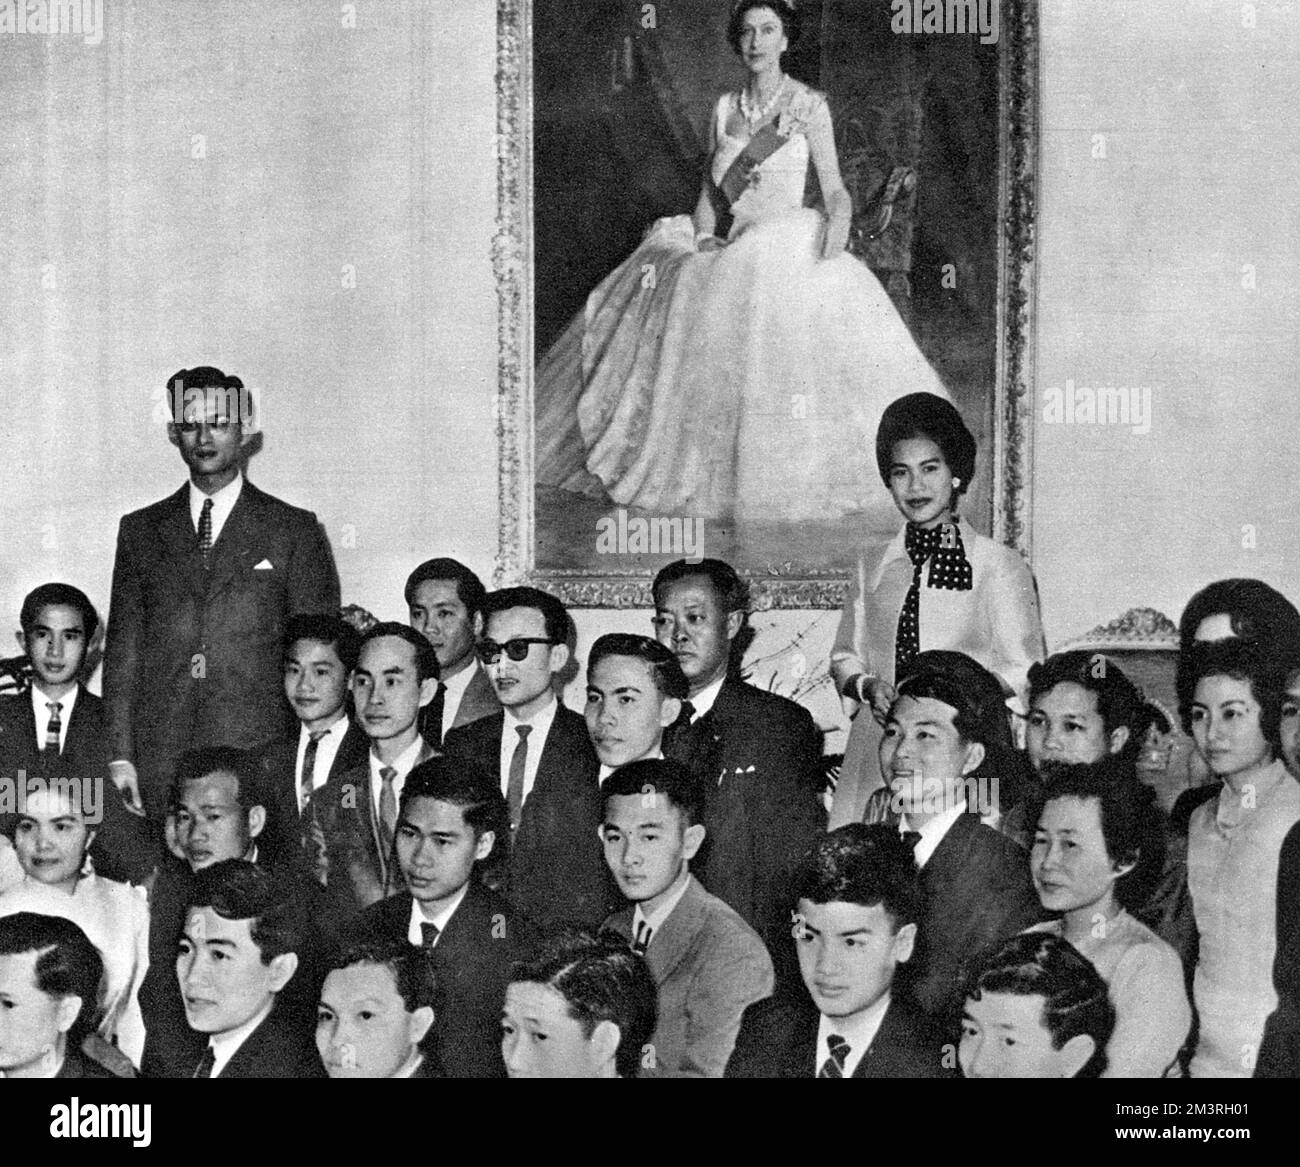 Une visite officielle de 8 jours en Nouvelle-Zélande par le roi Bhumibol Adulyadej (Rama IX) (1927-) et la reine Sirikit (1932-) de Thaïlande - photo prise à la Maison du gouvernement, Wellington, alors qu'un grand groupe d'étudiants thaïlandais se réunissent autour du roi et de la reine, sous un portrait complet de la reine Elizabeth II Date: 1962 Banque D'Images